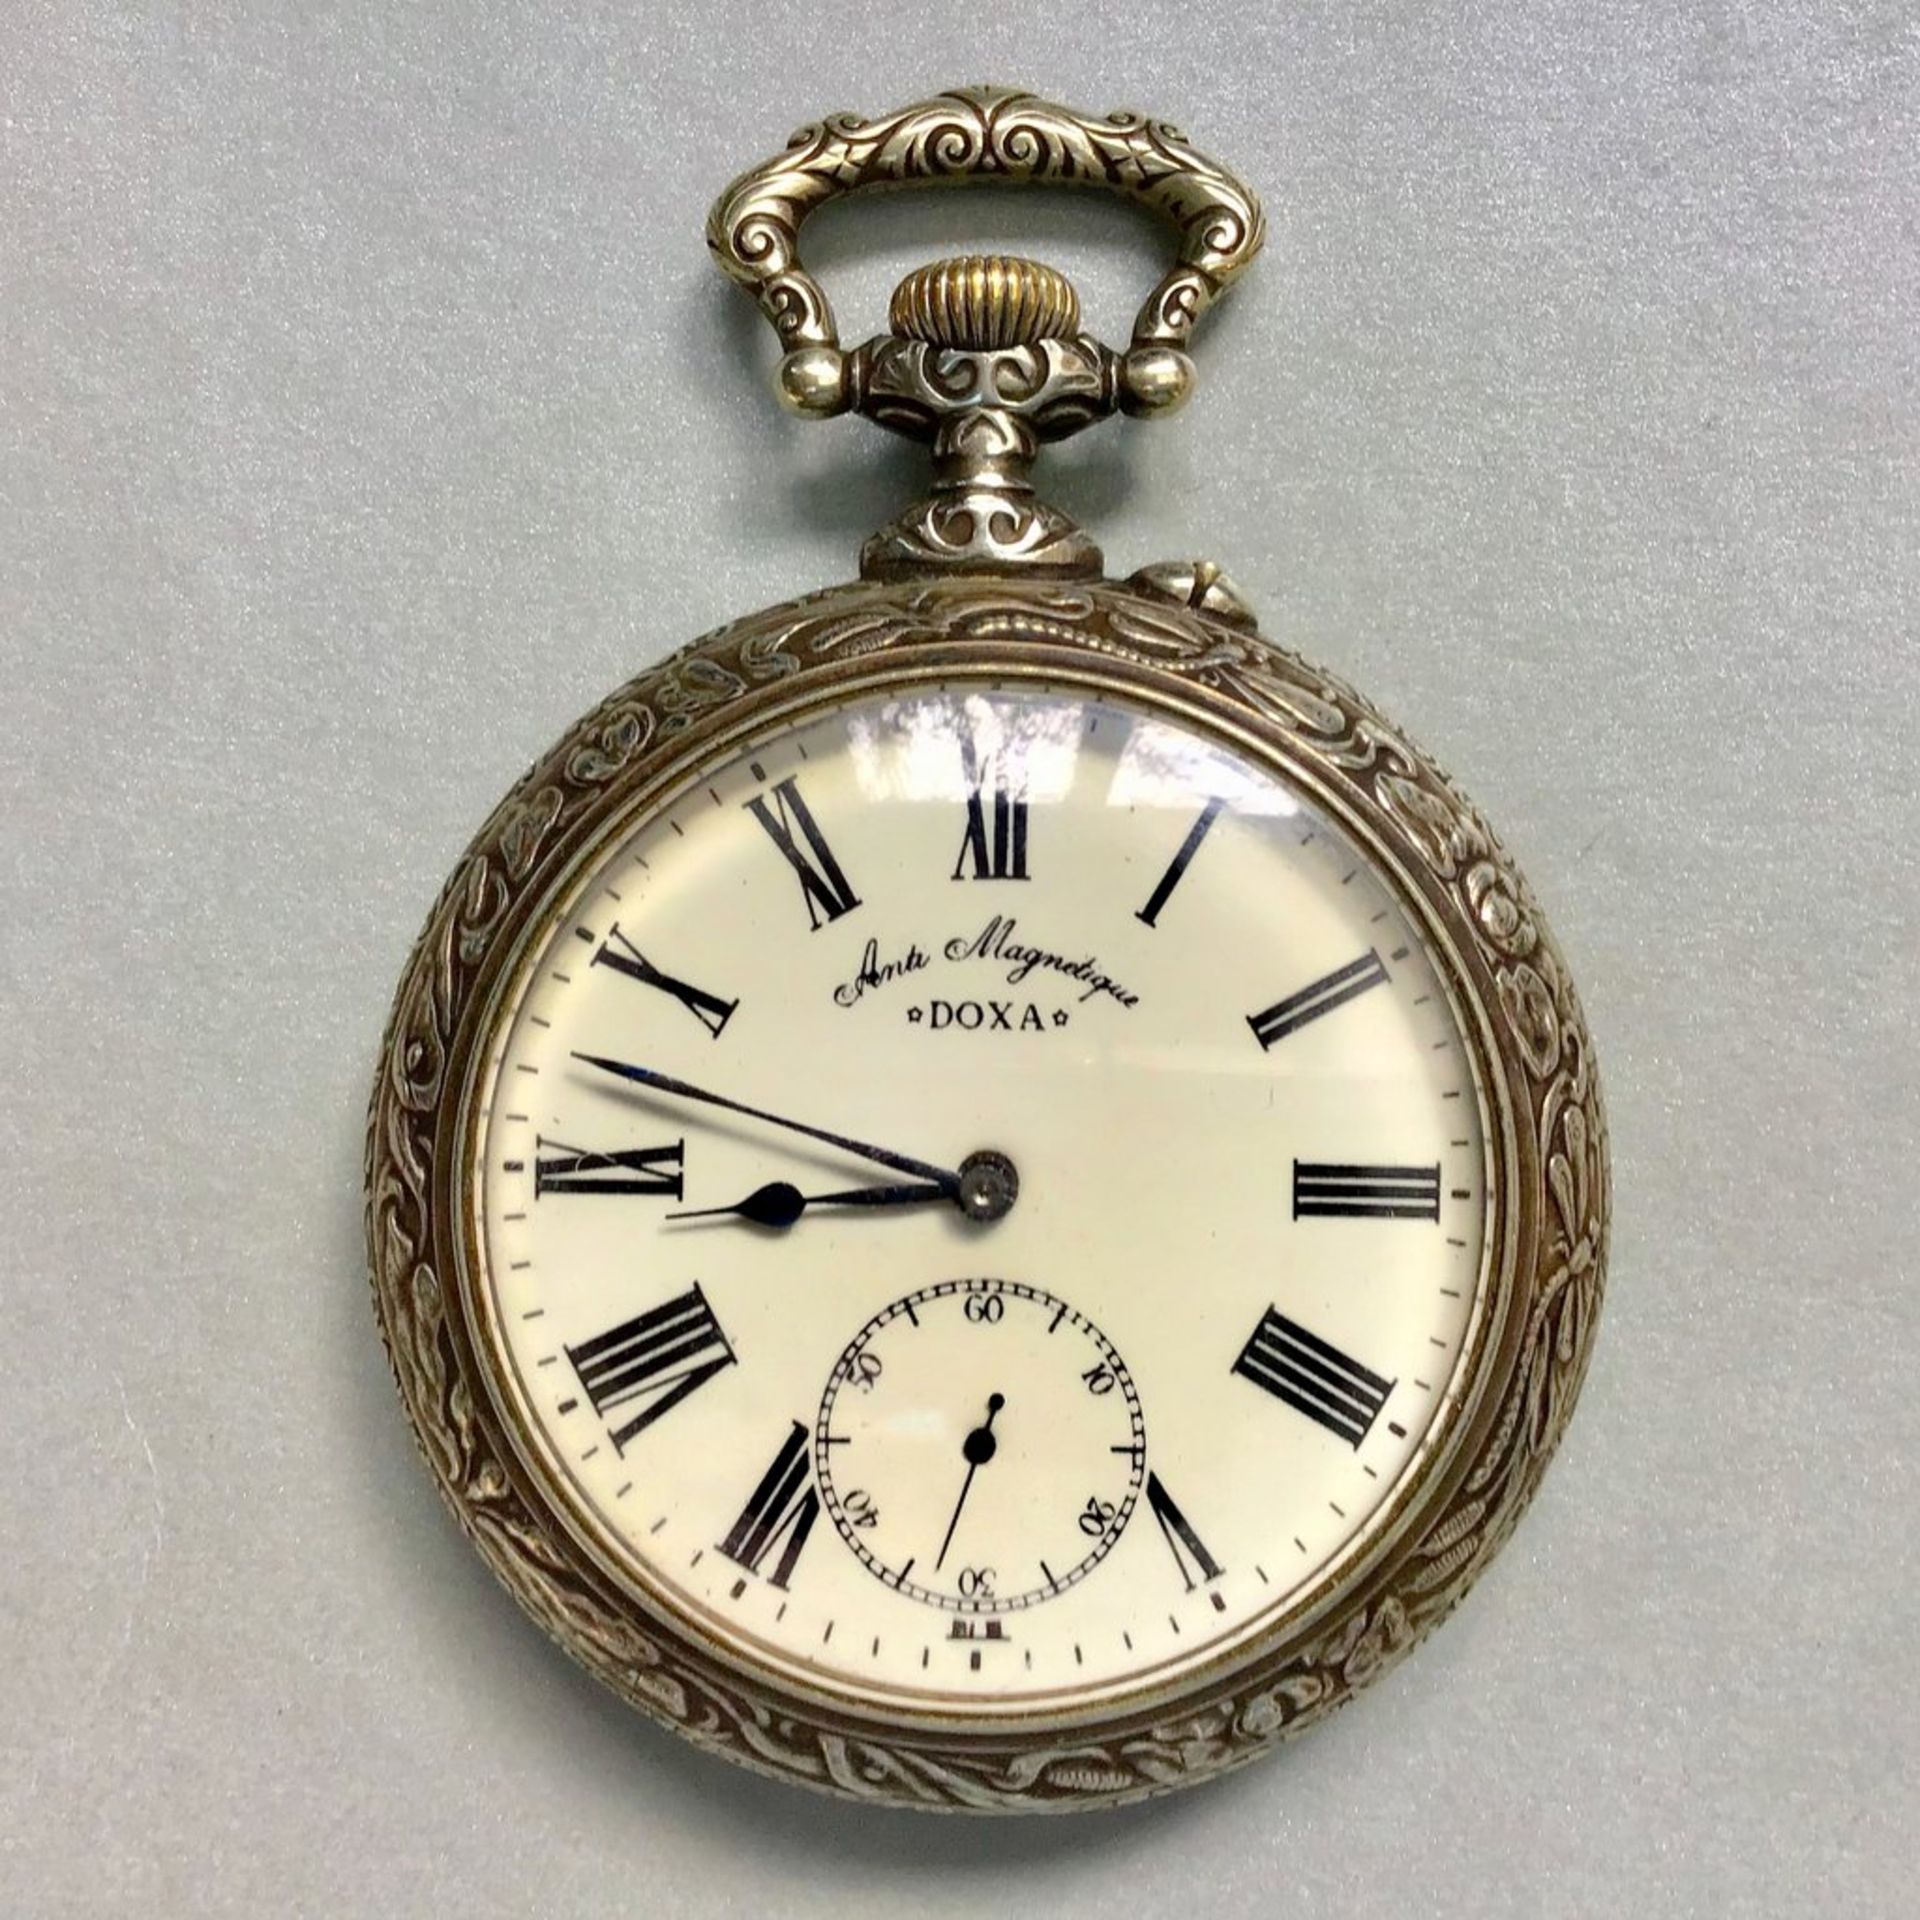 Eisenbahner-Uhr "Doxa", Gehäuse Metall vernickelt Anti Magnetique, um 1908, Rücks. Motiv